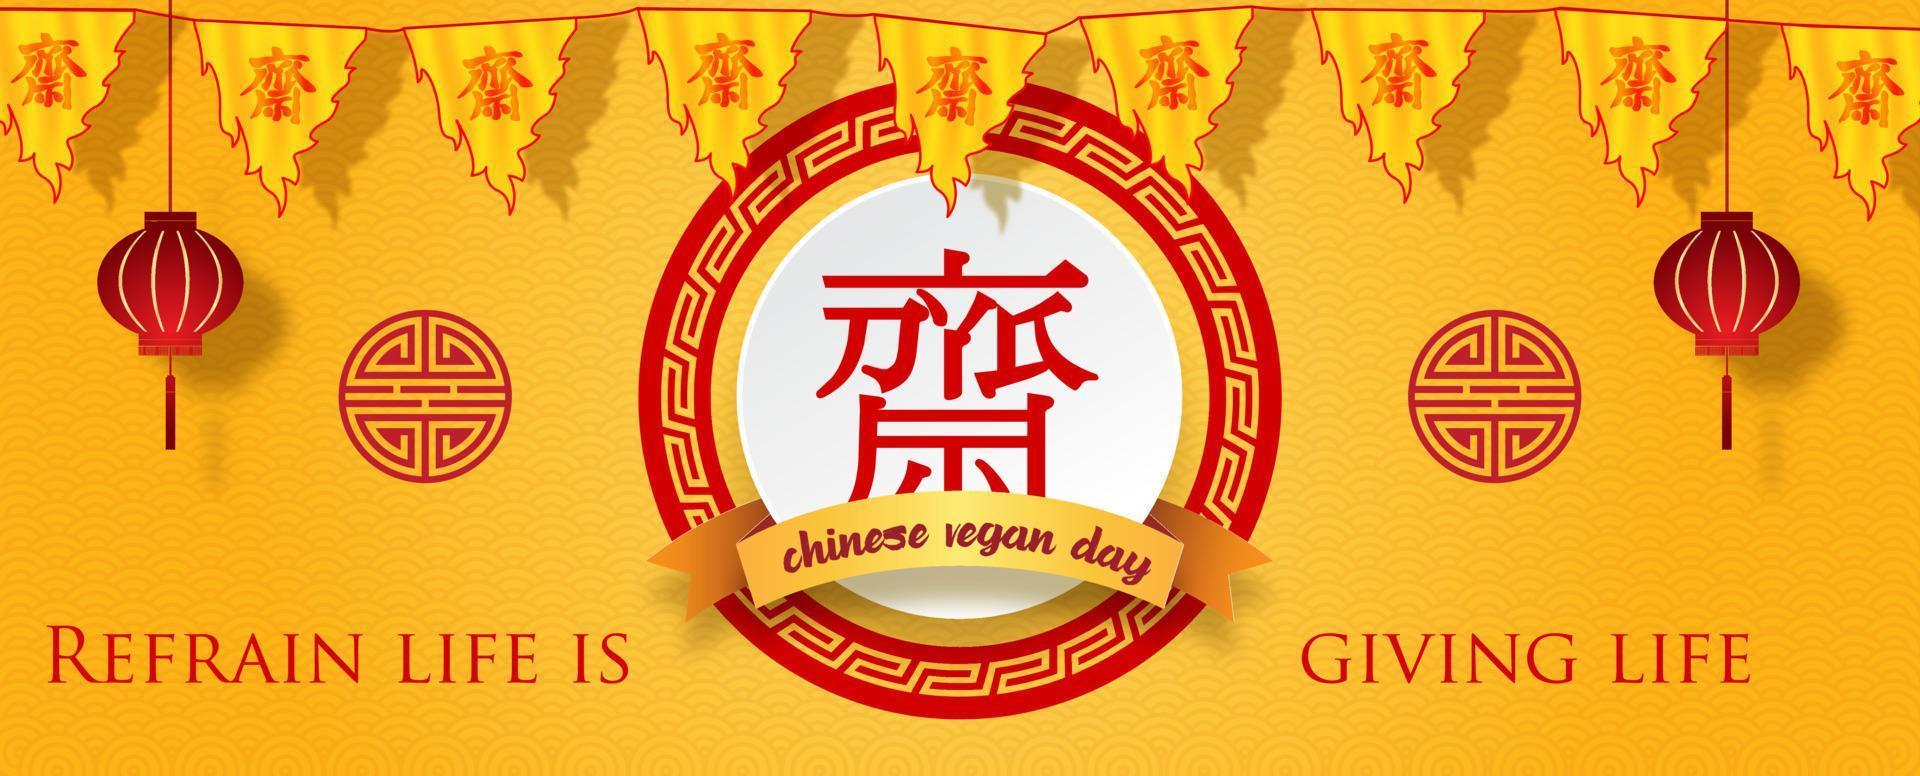 festival végétalien chinois dans une bannière web ou une enseigne de magasin et réalisé par dessin vectoriel. les lettres chinoises rouges signifient jeûner pour adorer bouddha en anglais. vecteur